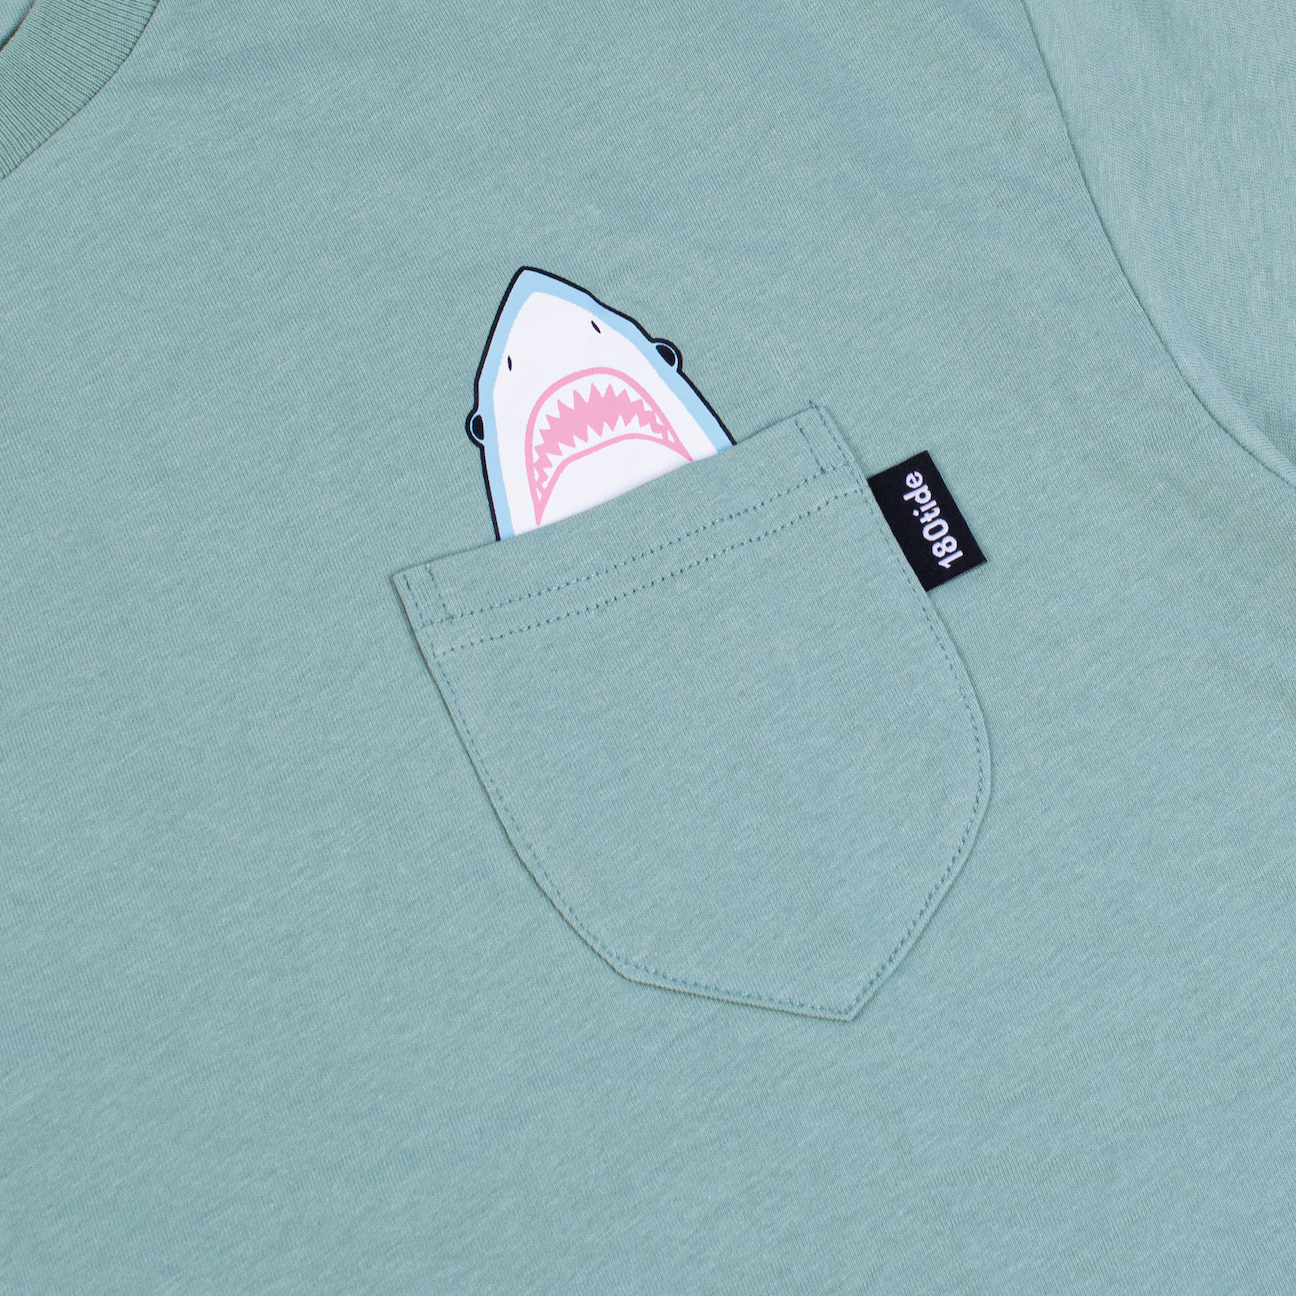 Shark wearing rubber ducky floatie sage green pocket tee. 